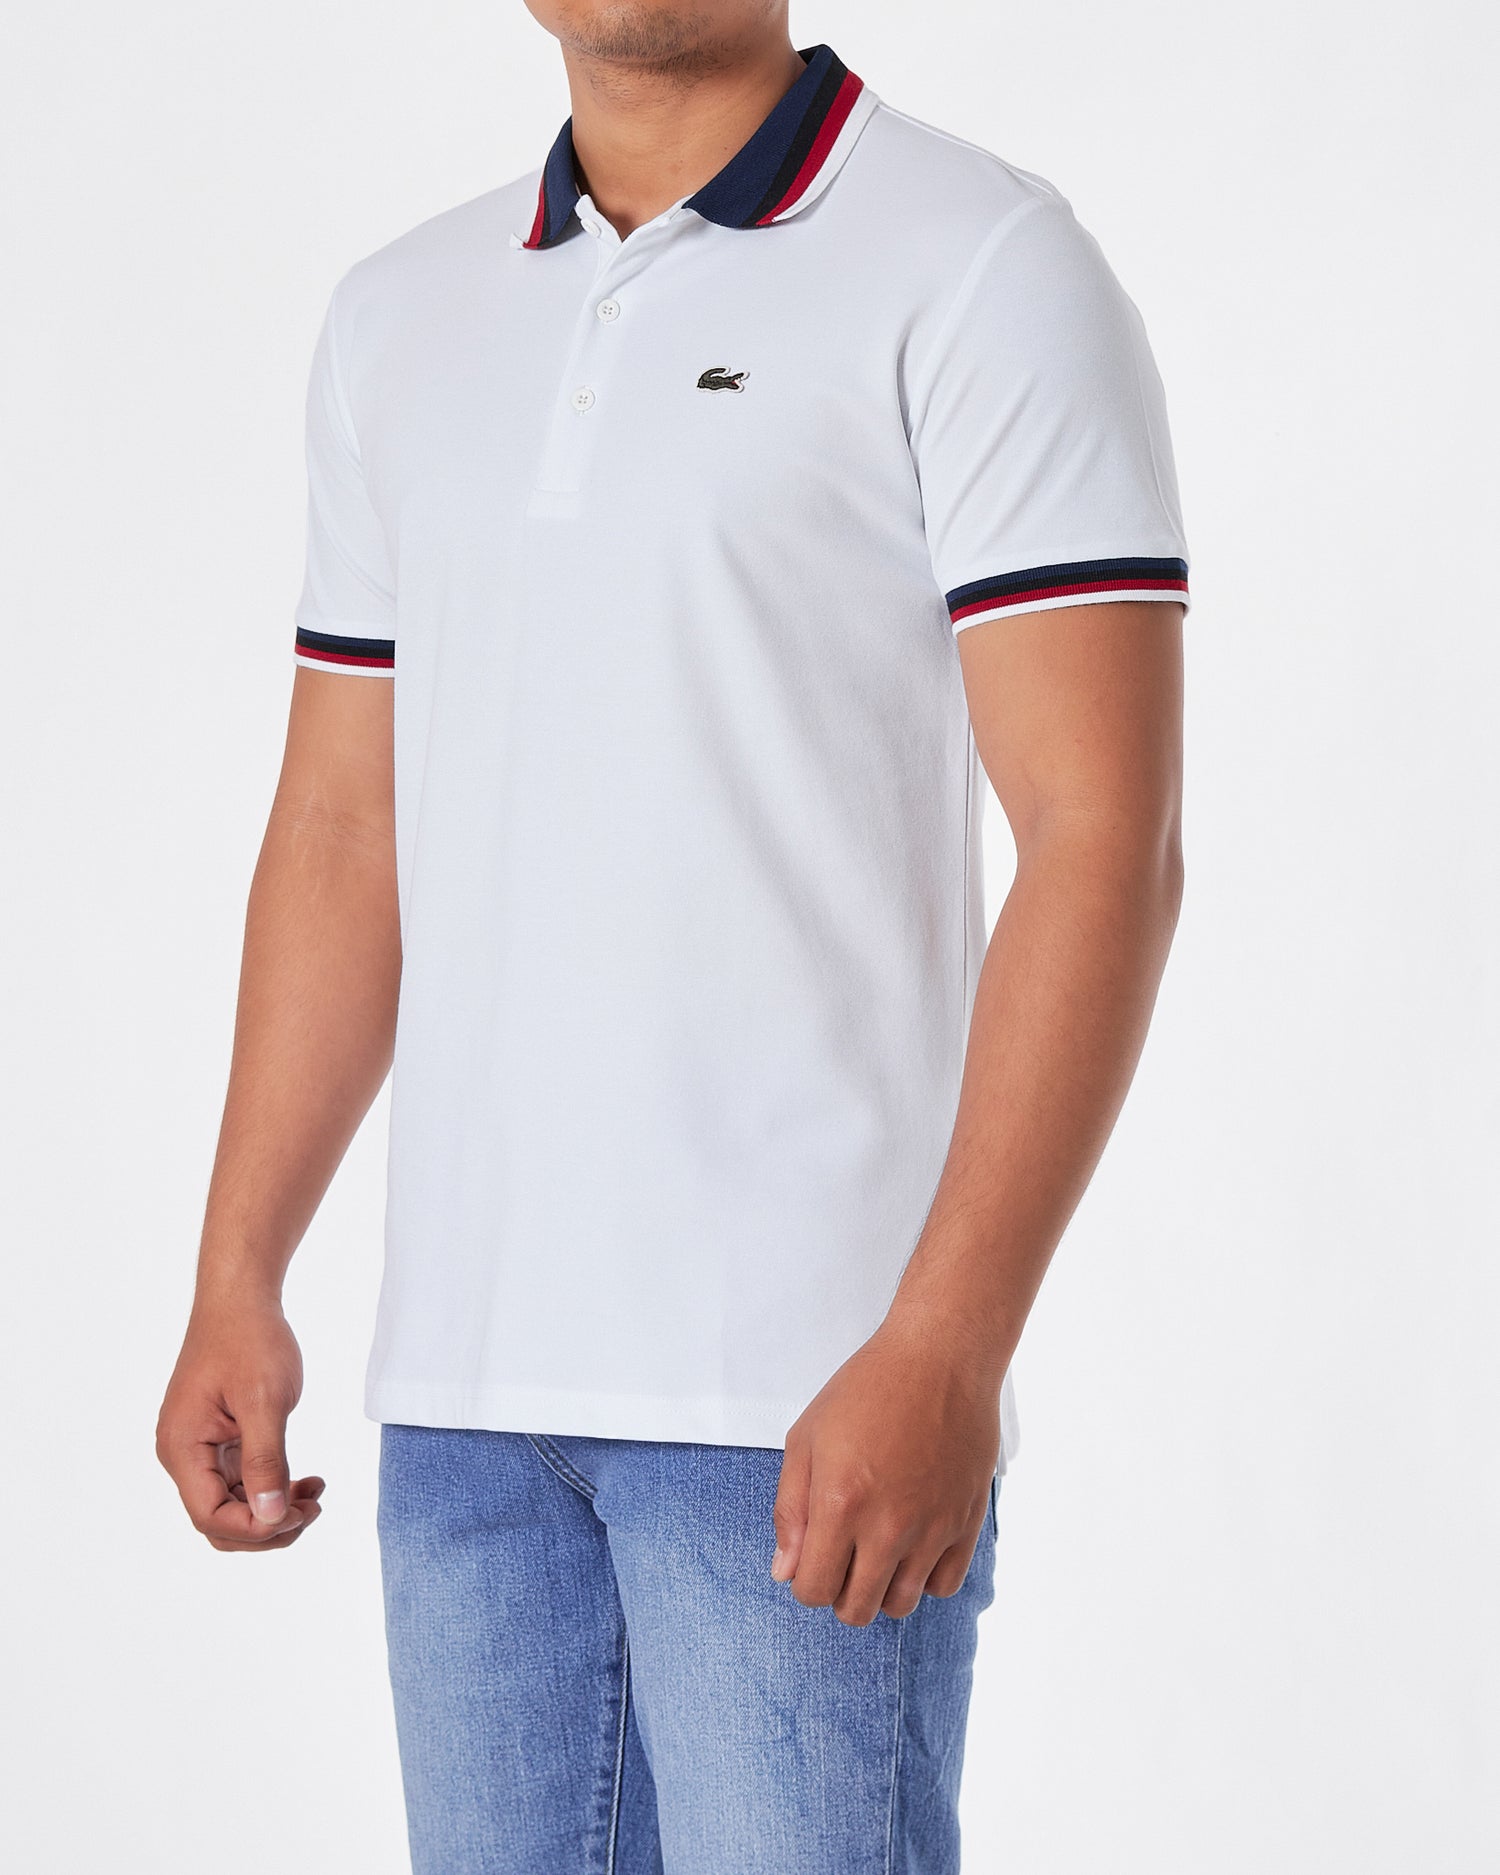 LAC Striped Collar Men White Polo Shirt 23.90